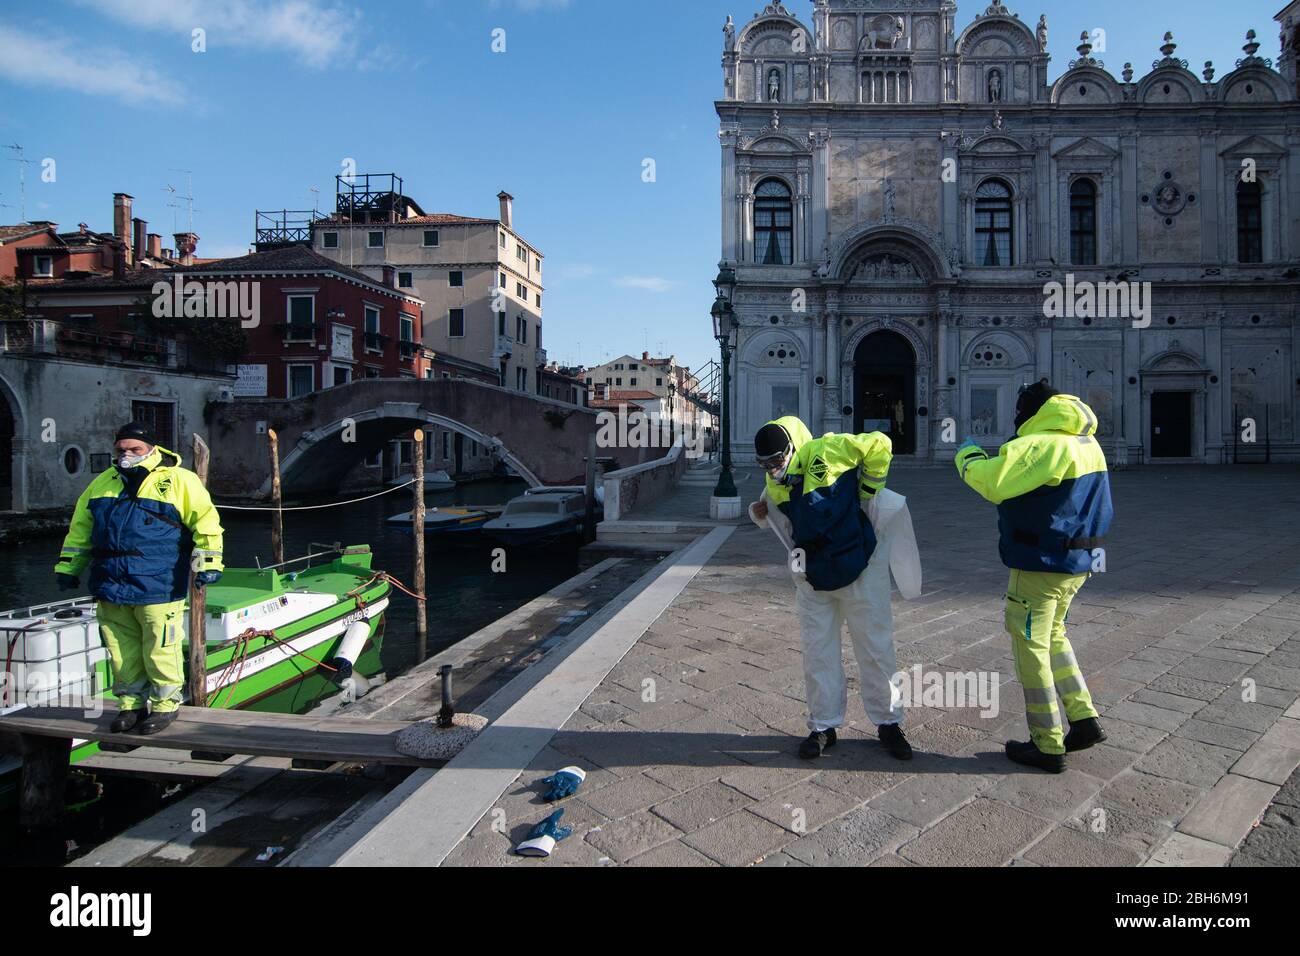 VENEZIA, ITALIA - APRILE 2020: I sanitizzatori si preparano a lavorare durante la chiusura nazionale per la pandemia Covid-19. Foto Stock